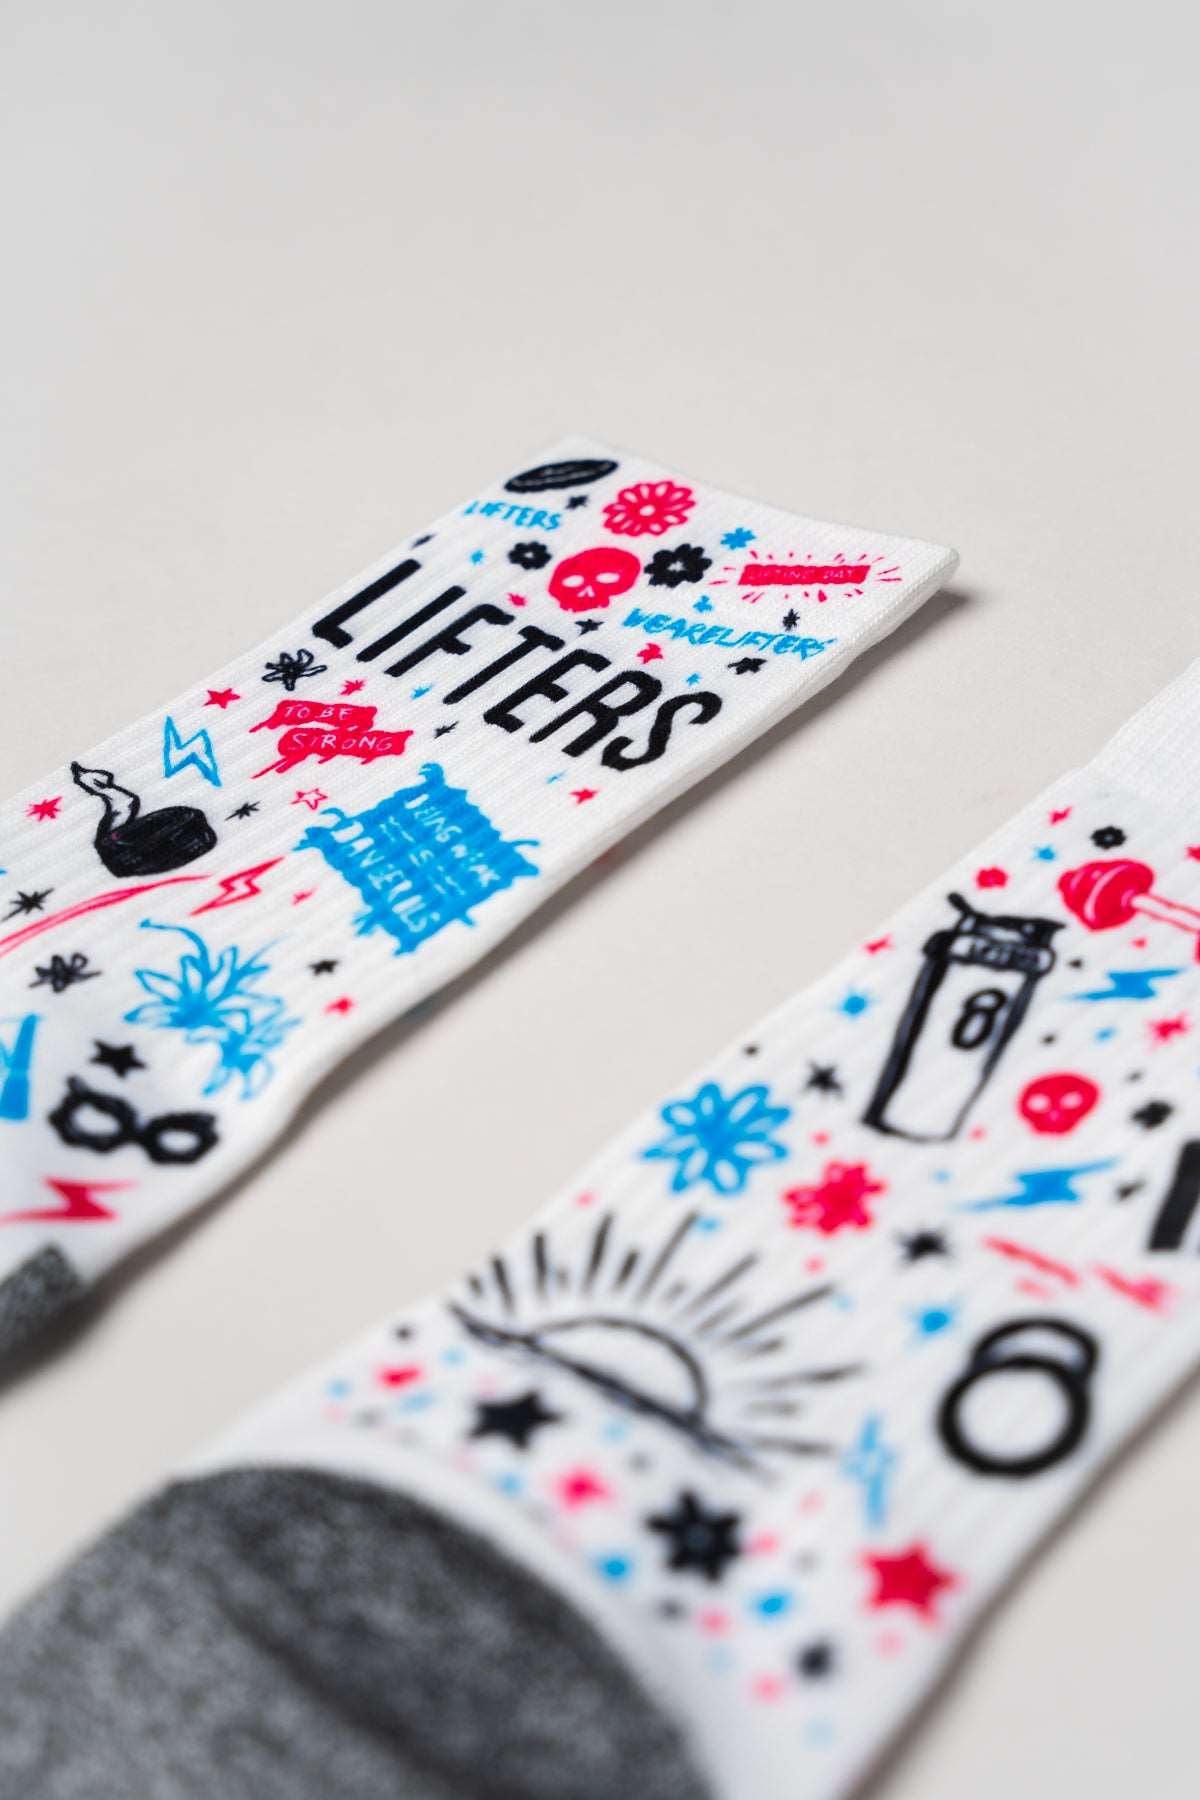 Lifters Hype Crew Socks - Lifters Wear